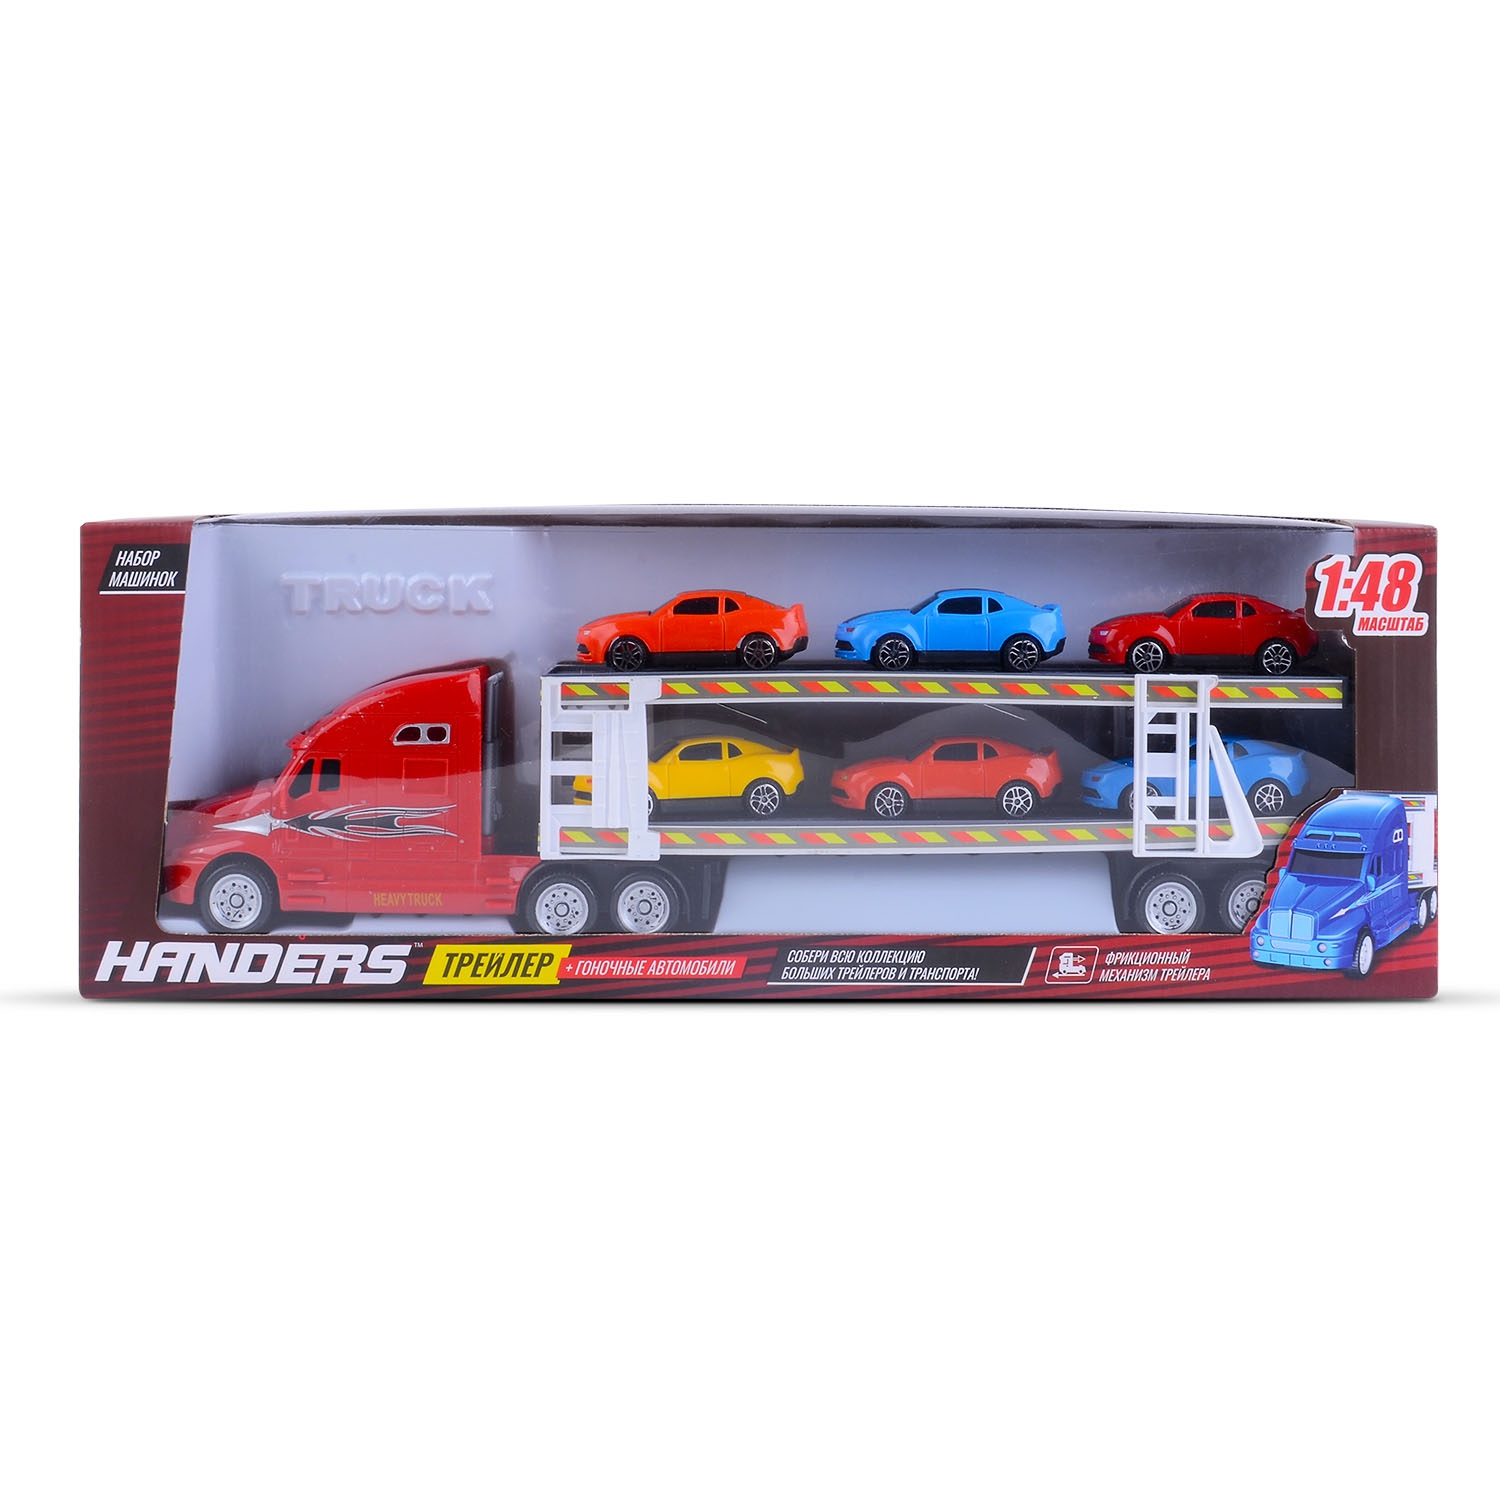 Набор машинок Handers Трейлер: гоночные автомобили (6 маш., инерц. трейлер 39 см, 1:48, красный) (Вид 2)